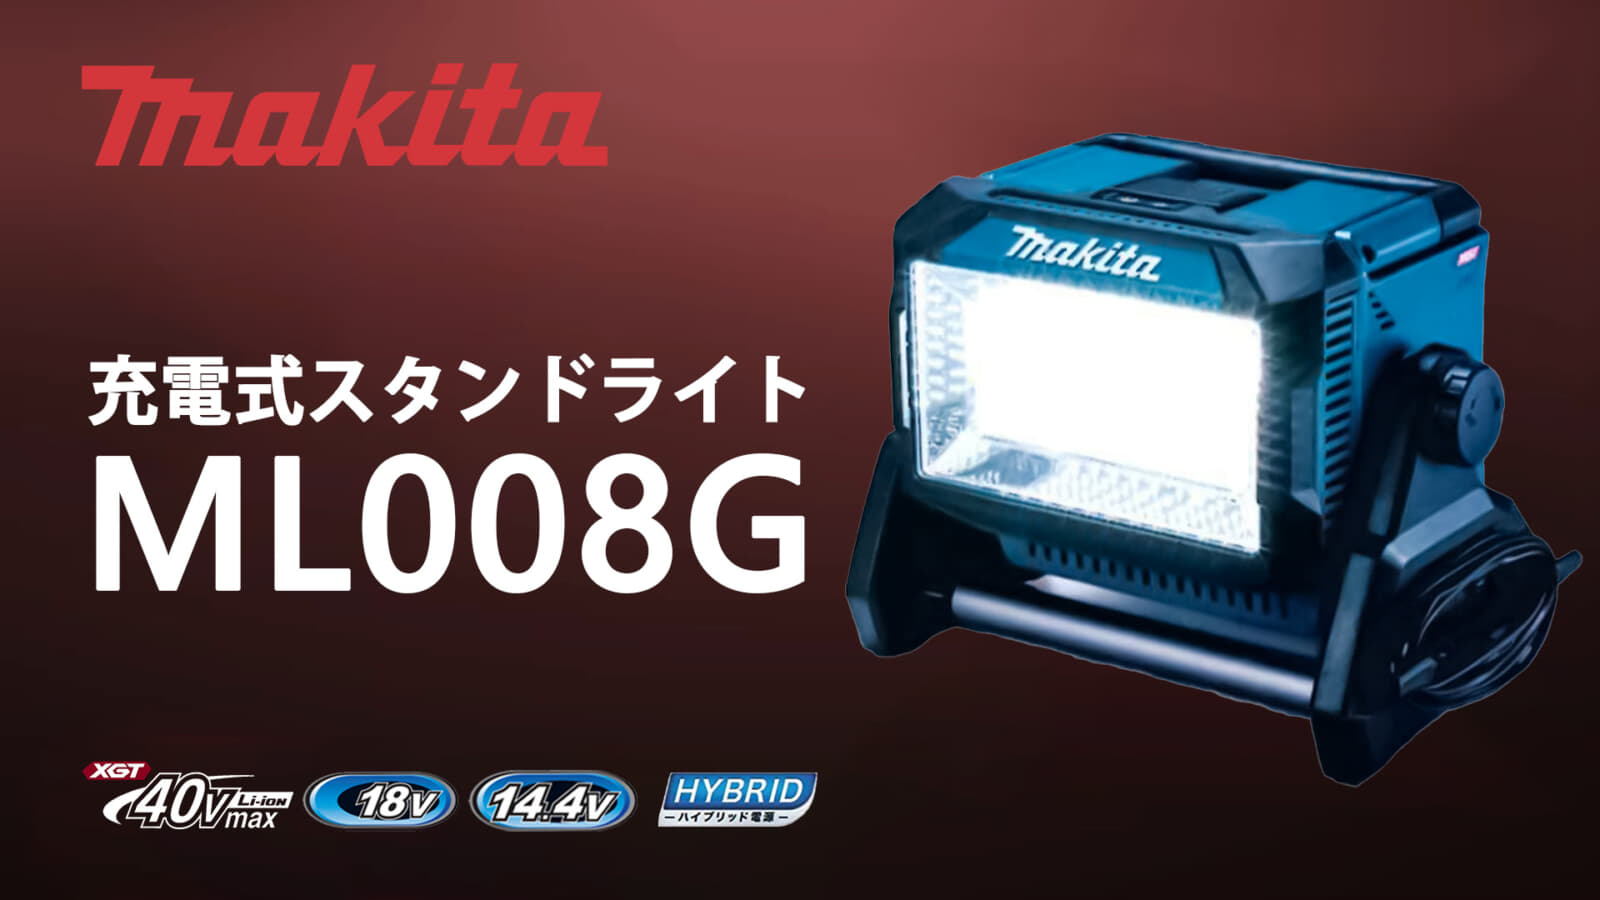 マキタ ML008G 充電式スタンドライトを発売、40Vmax対応の10,000lm